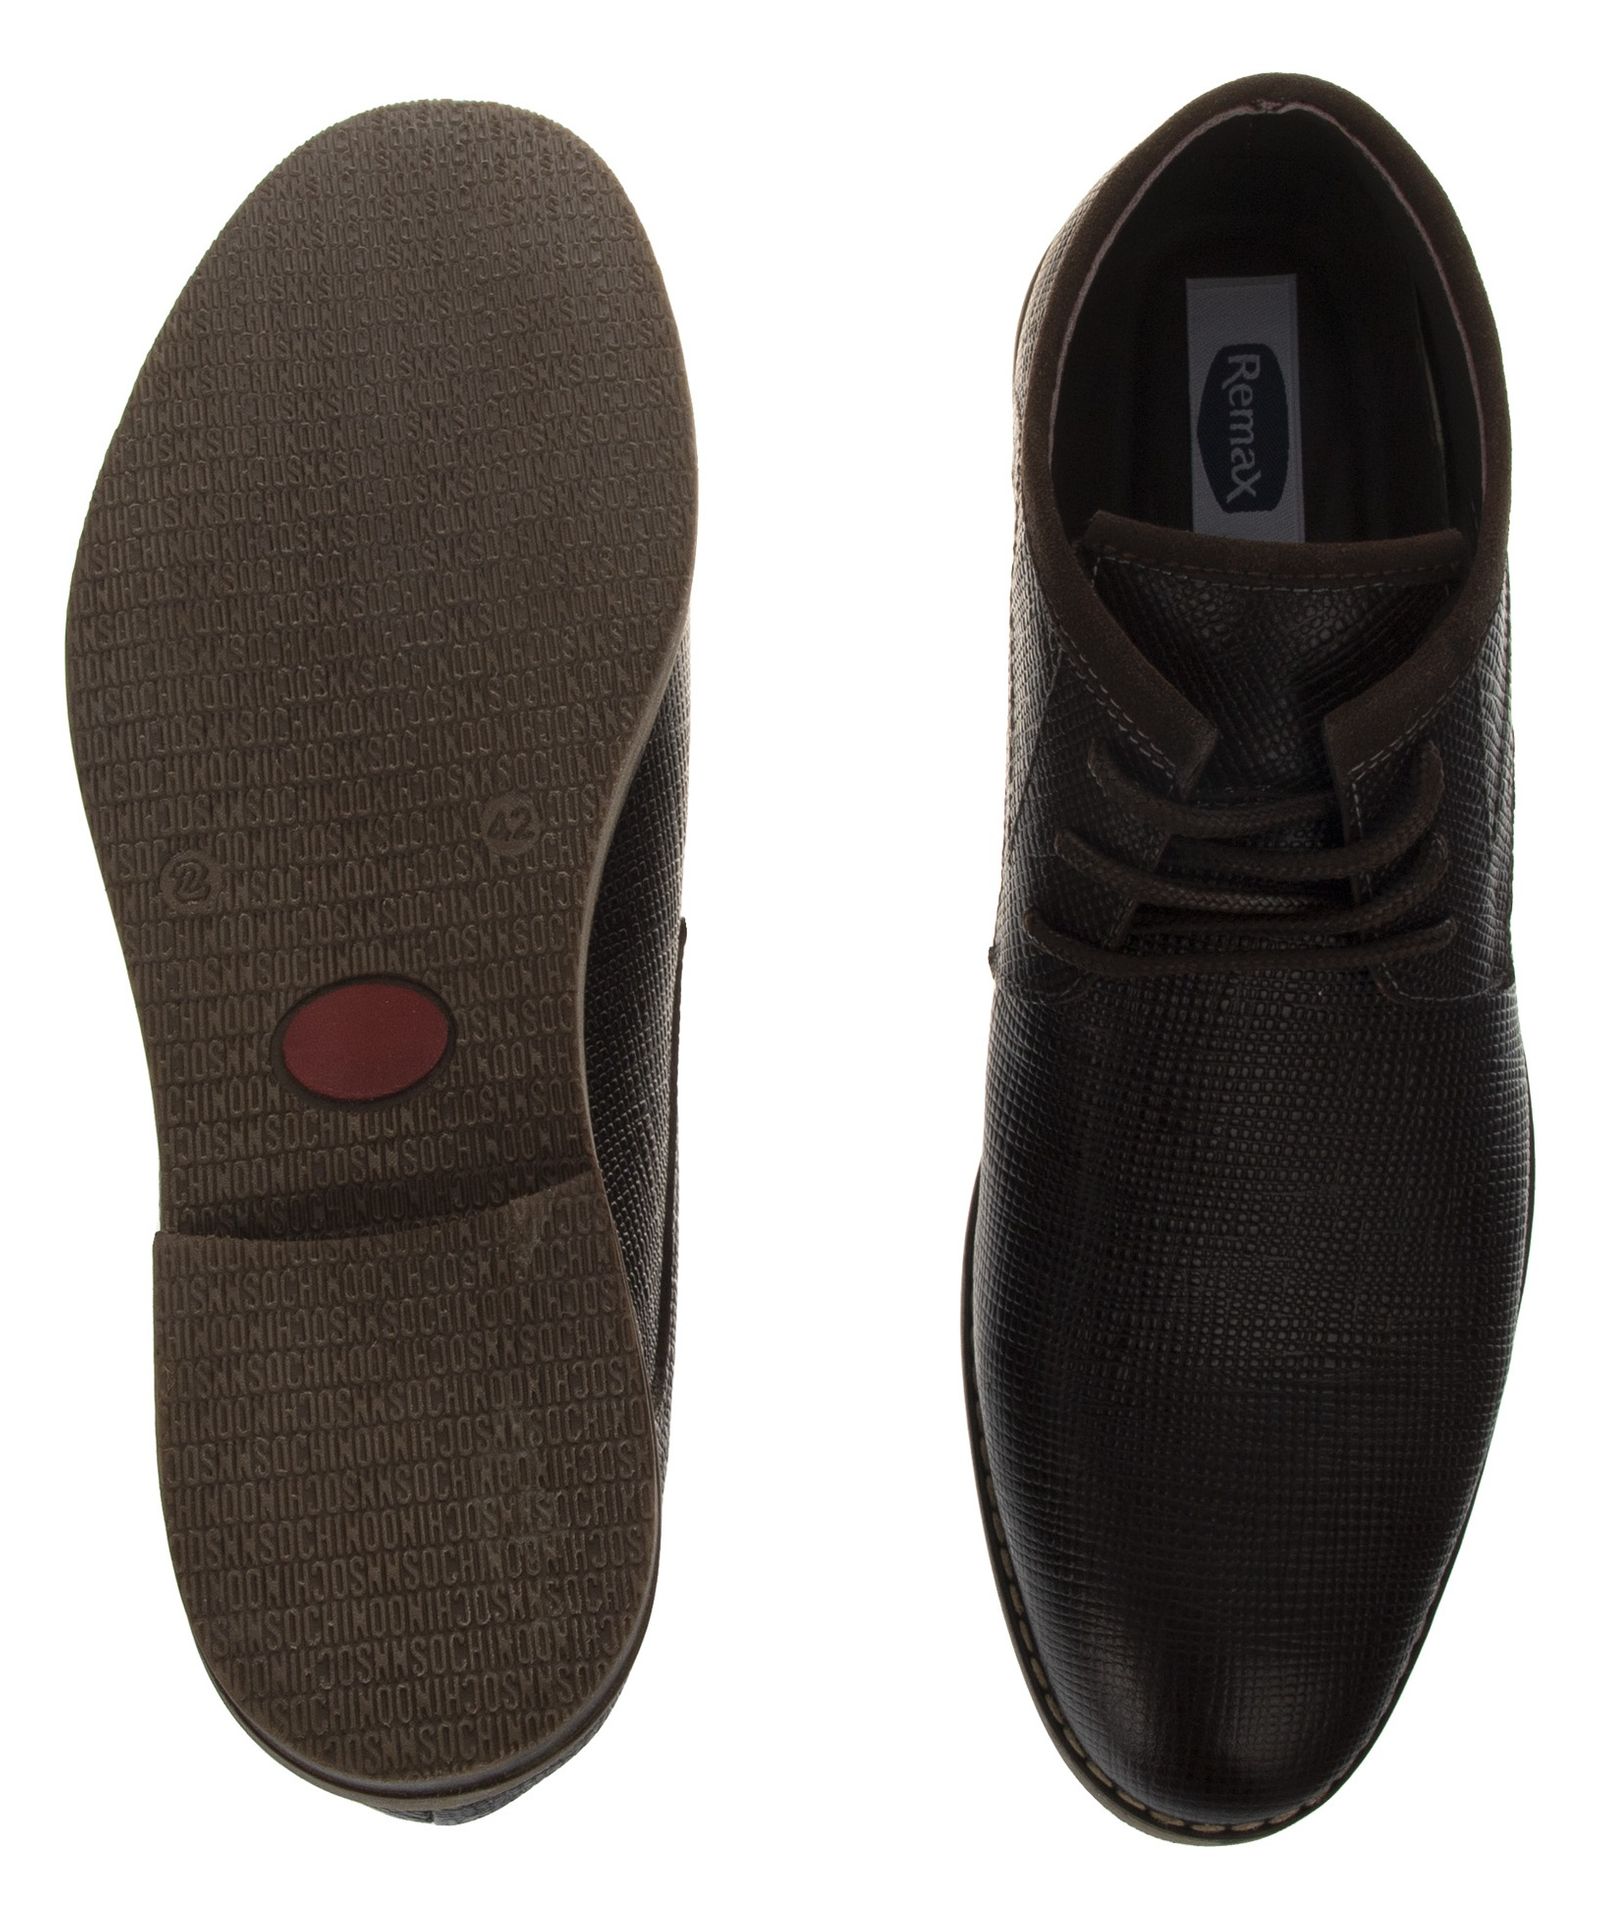 کفش مردانه ریمکس مدل 7231A503-104 - قهوه ای - 6